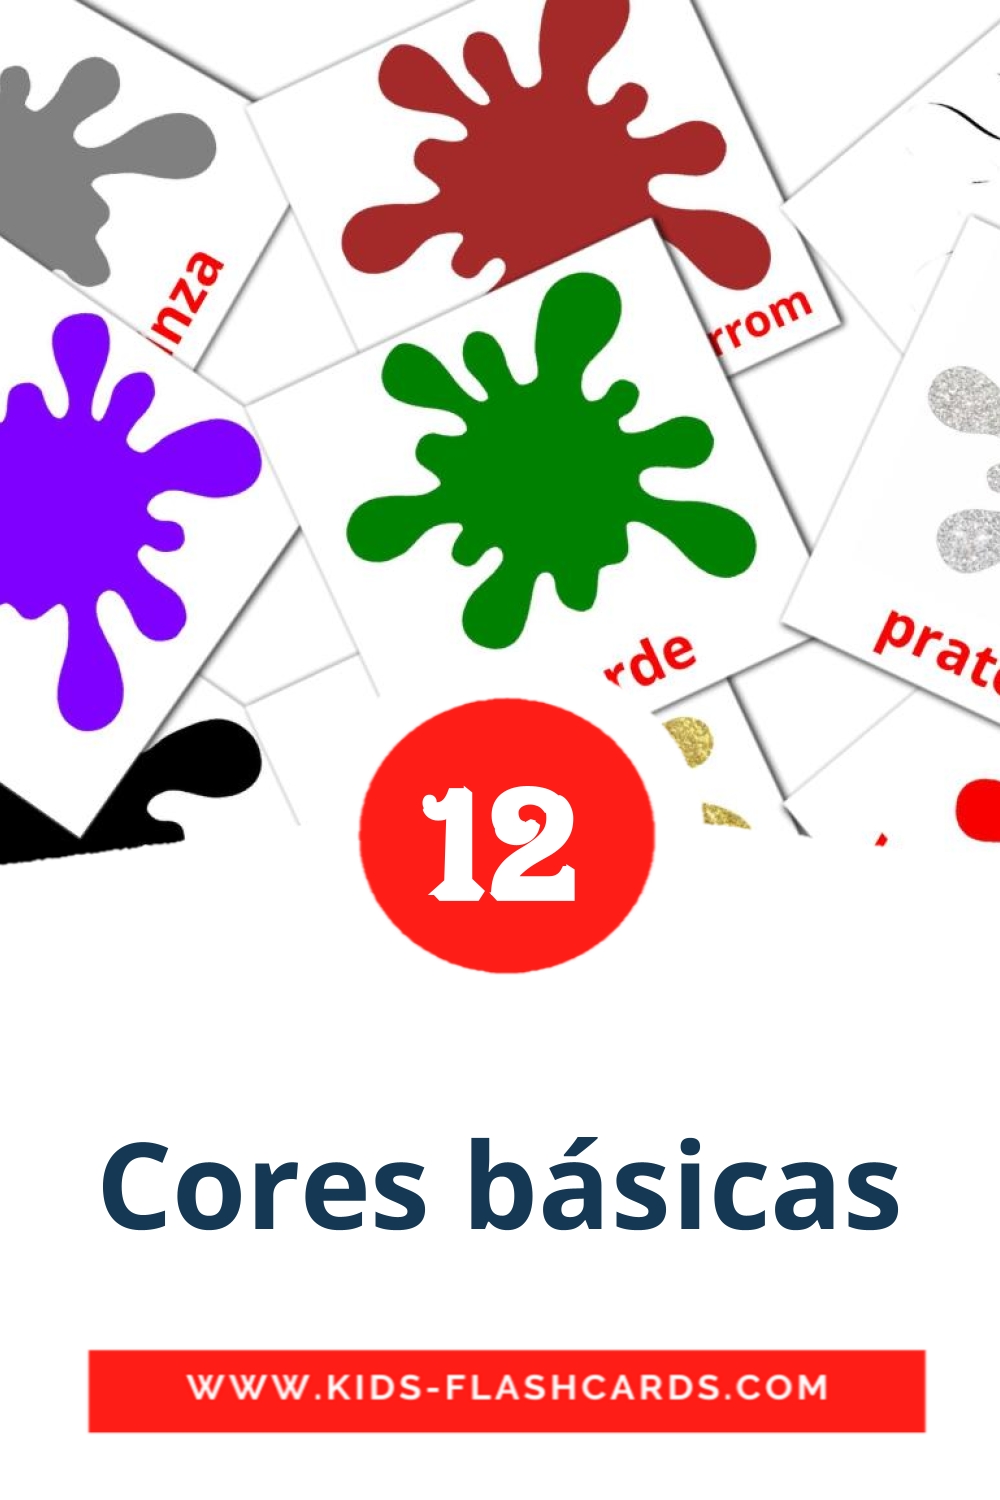 12 cartes illustrées de Cores básicas pour la maternelle en portugués